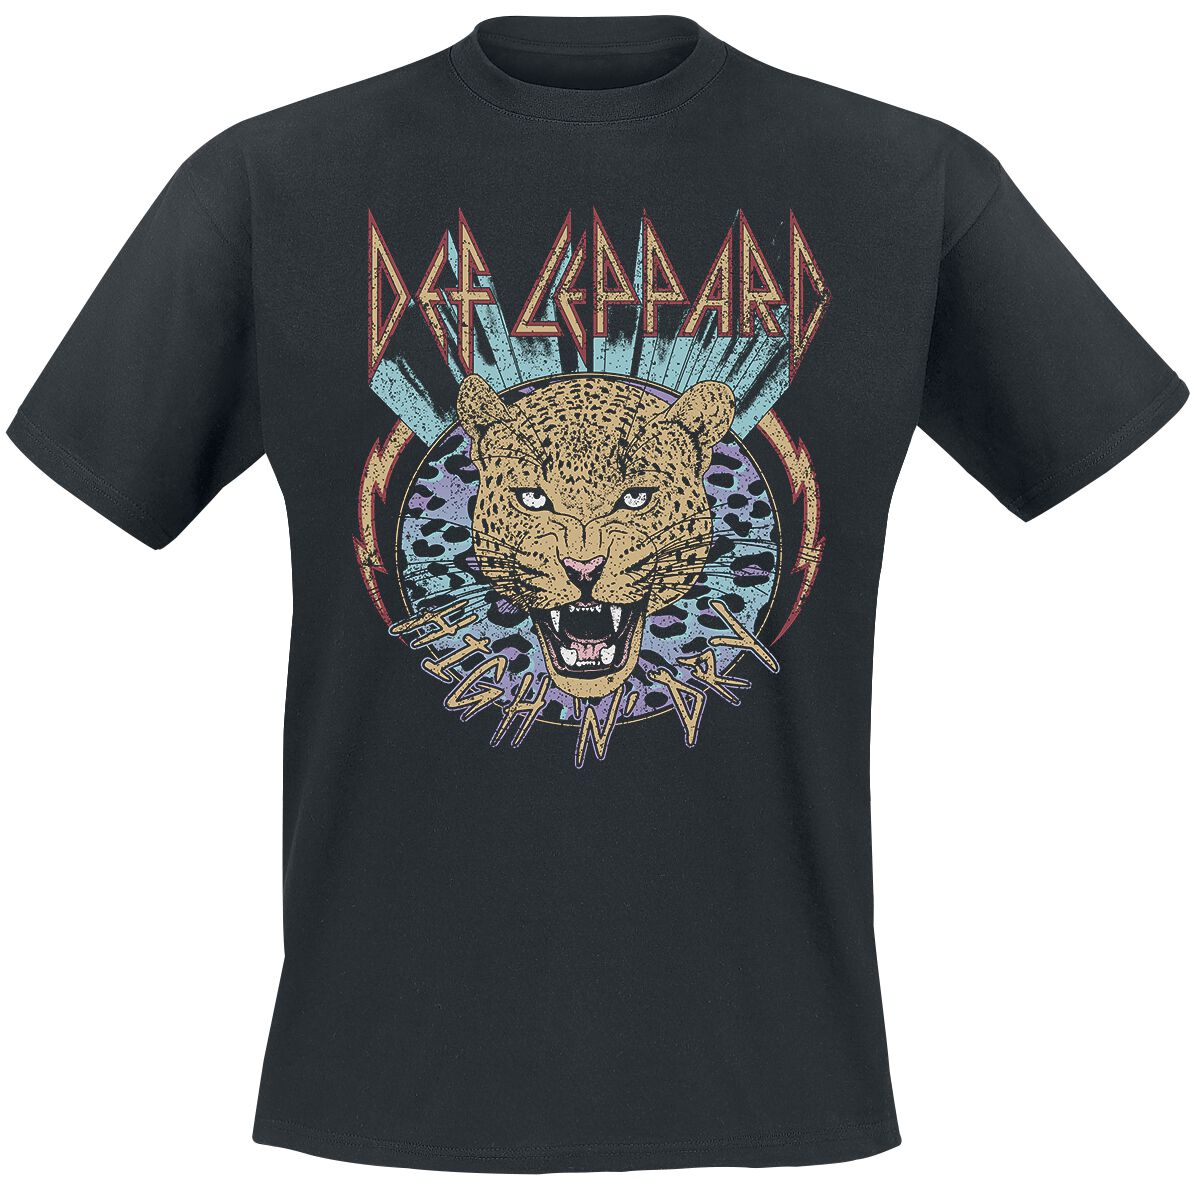 Def Leppard T-Shirt - High N Dry Leopard - M bis 3XL - für Männer - Größe L - schwarz  - Lizenziertes Merchandise!